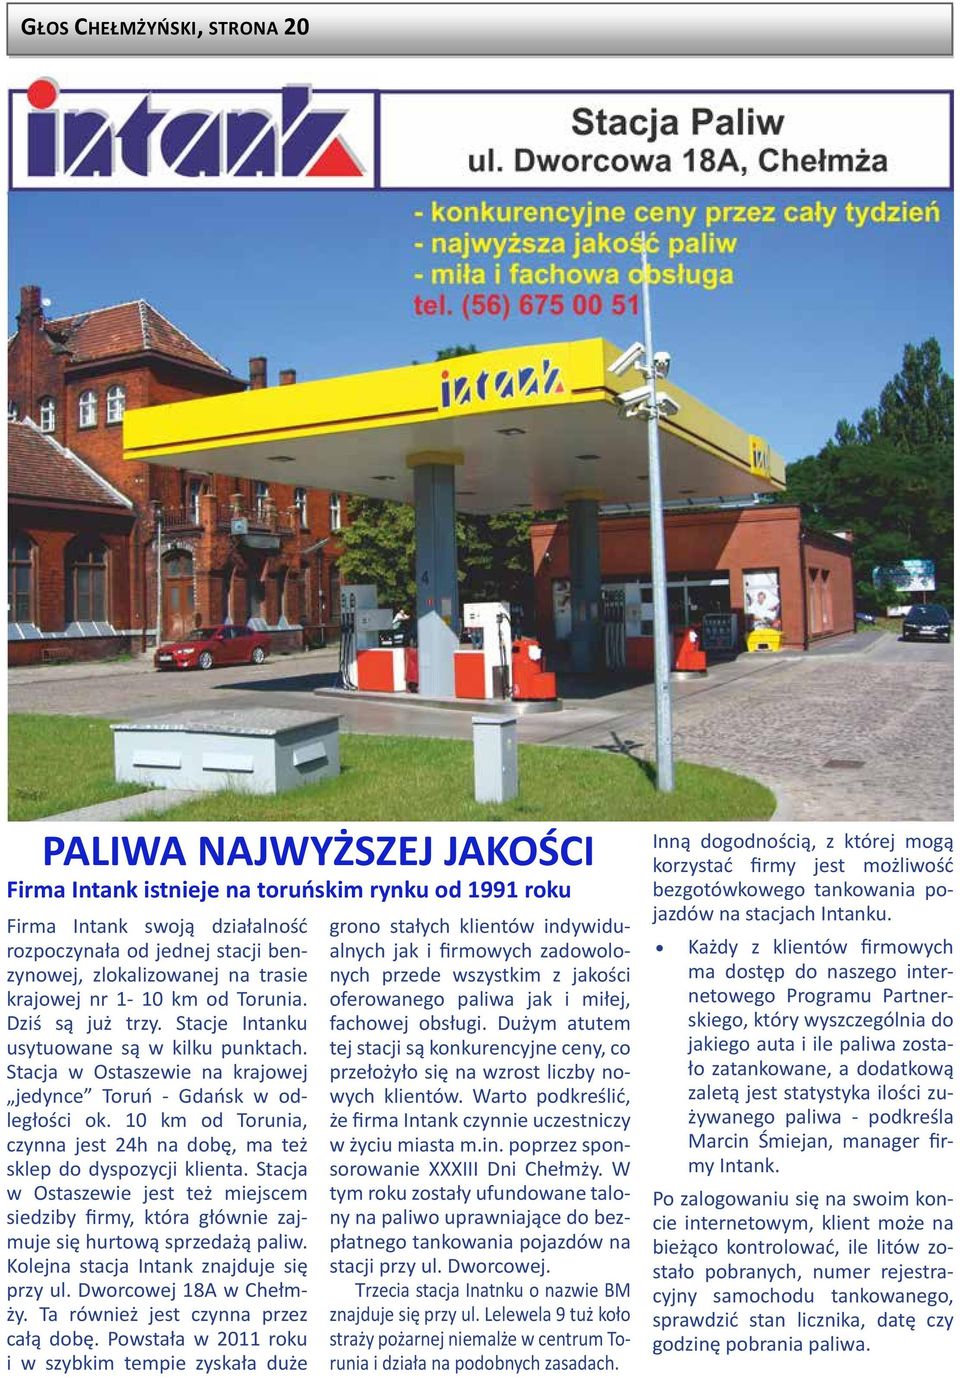 10 km od Torunia, czynna jest 24h na dobę, ma też sklep do dyspozycji klienta. Stacja w Ostaszewie jest też miejscem siedziby firmy, która głównie zajmuje się hurtową sprzedażą paliw.